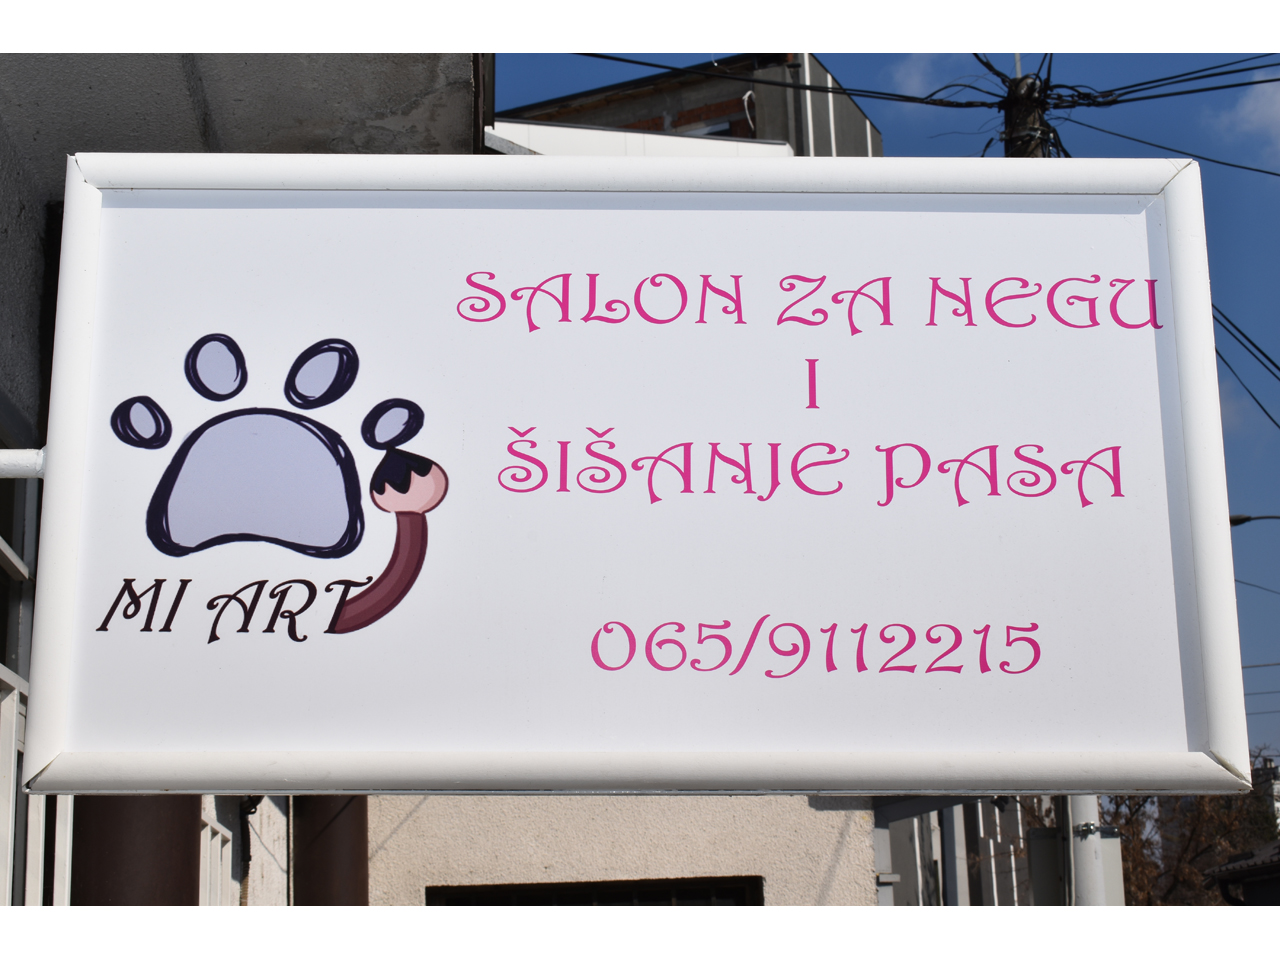 Photo 2 - MI ART GROOMING STUDIO Pet salon, dog grooming Belgrade